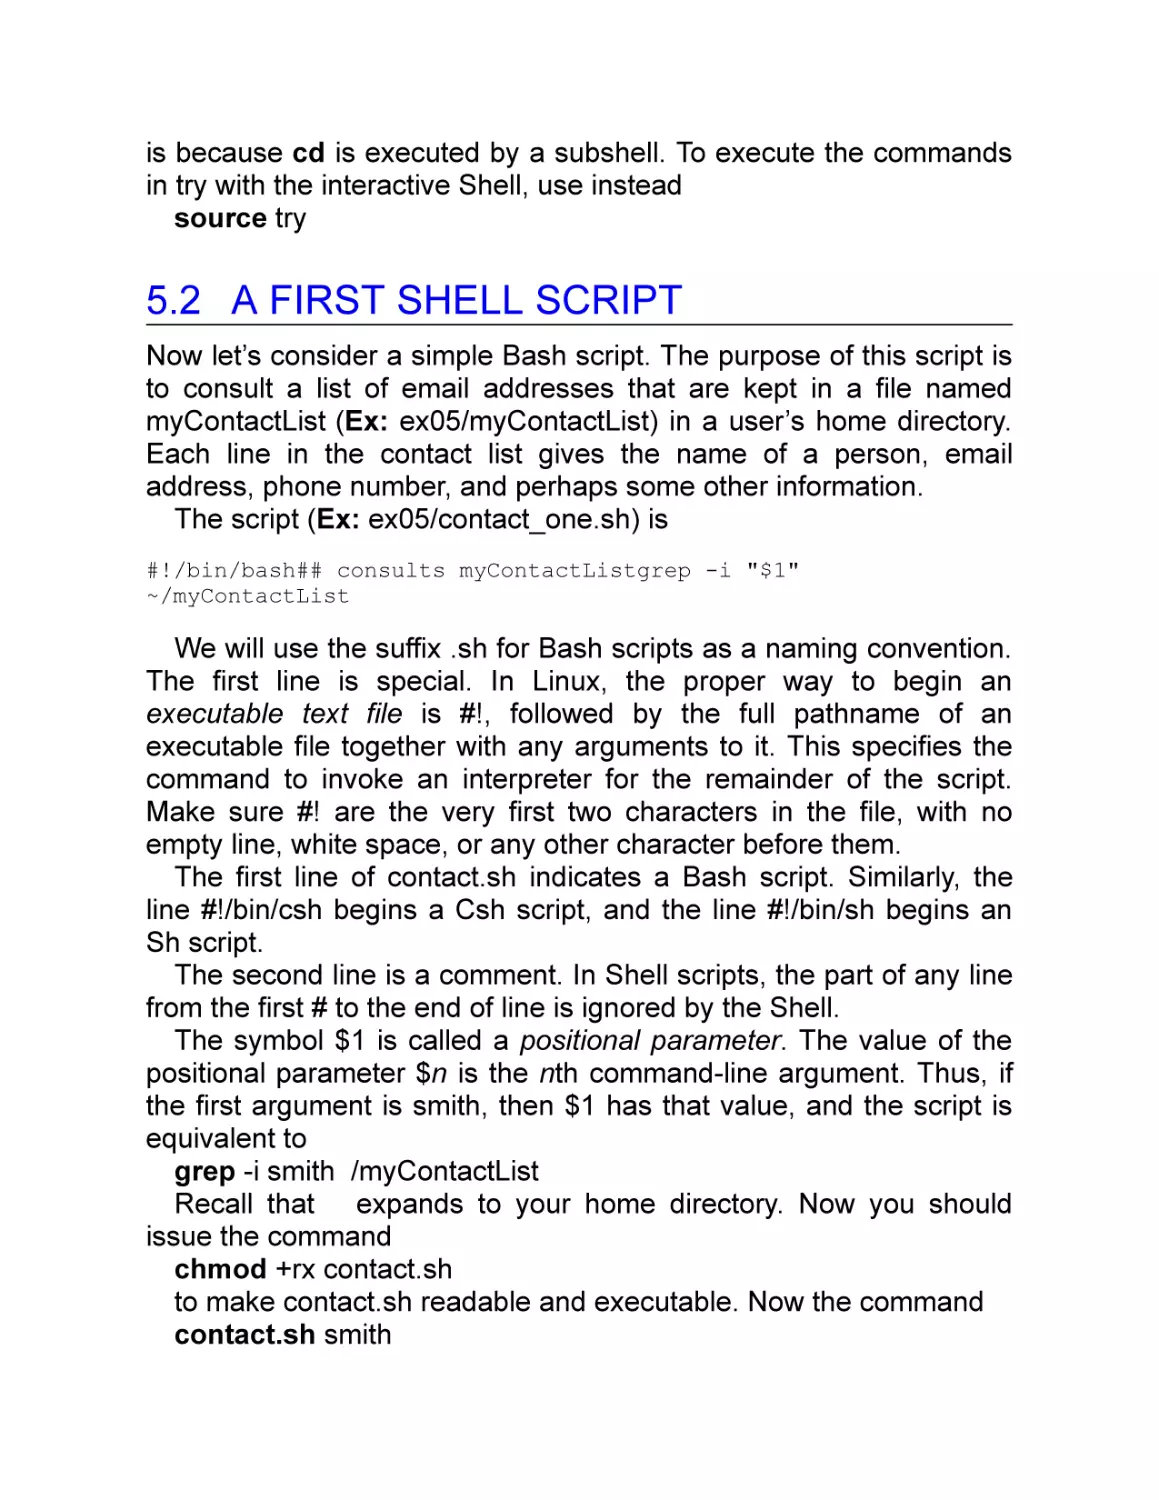 5.2 A First Shell Script